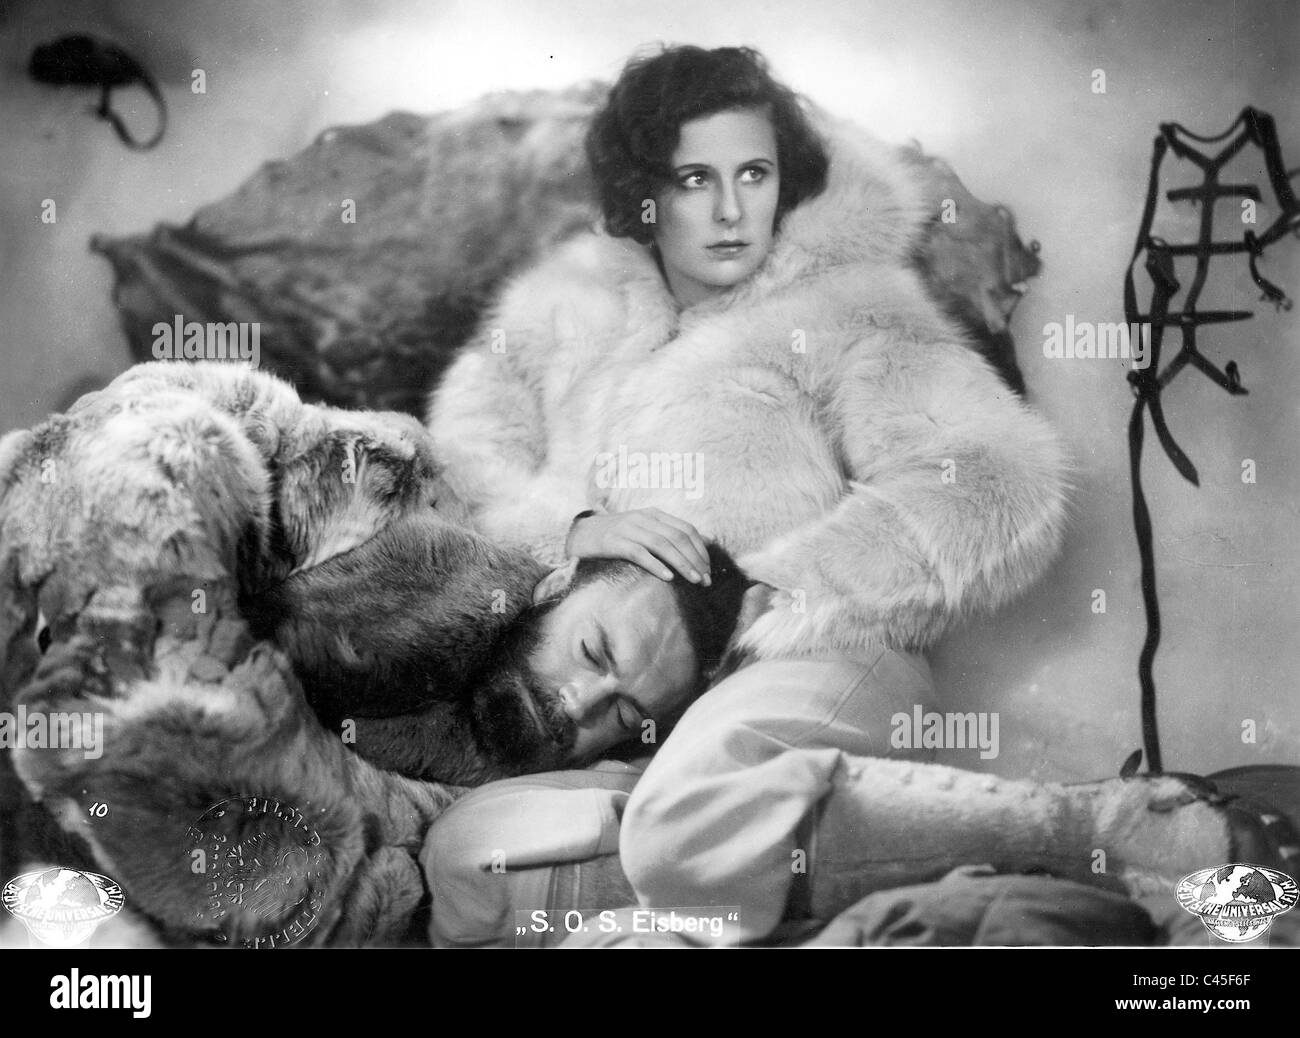 Leni Riefenstahl and Gustav Diessl in S.O.S. Eisberg, 1933 Stock Photo